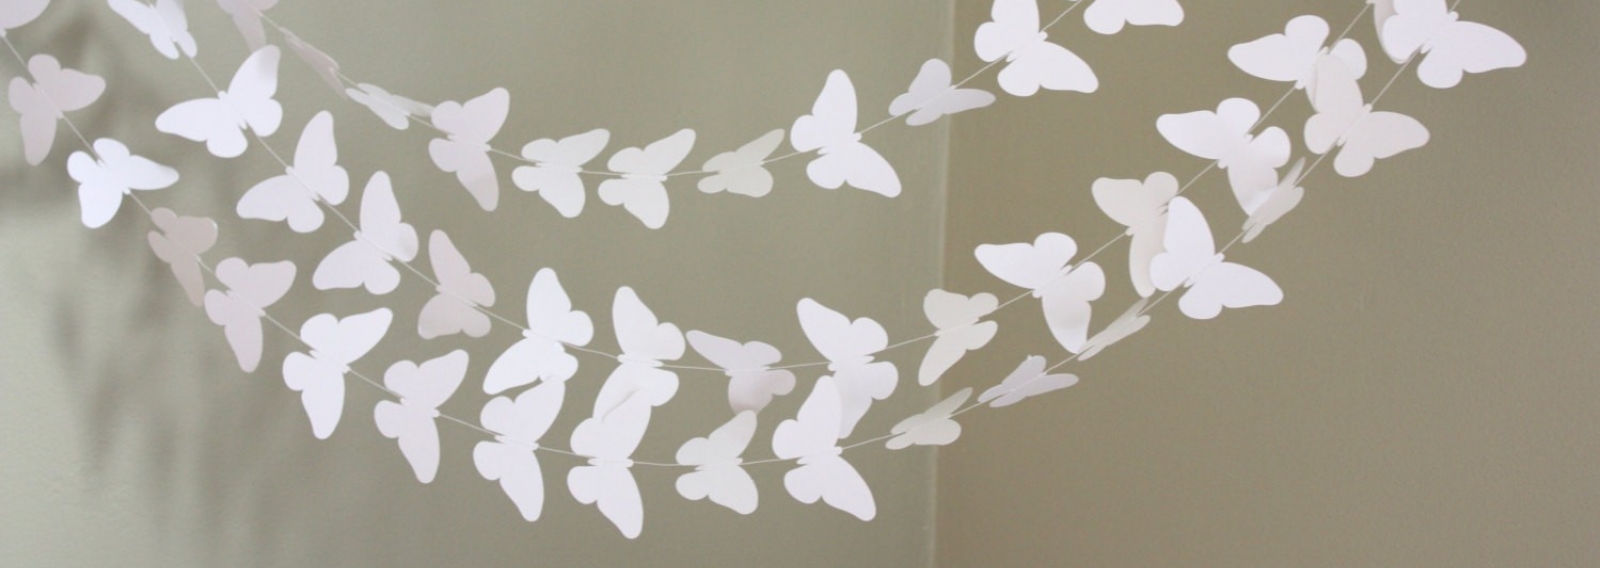 Воздушная тема для свадьбы - бабочки